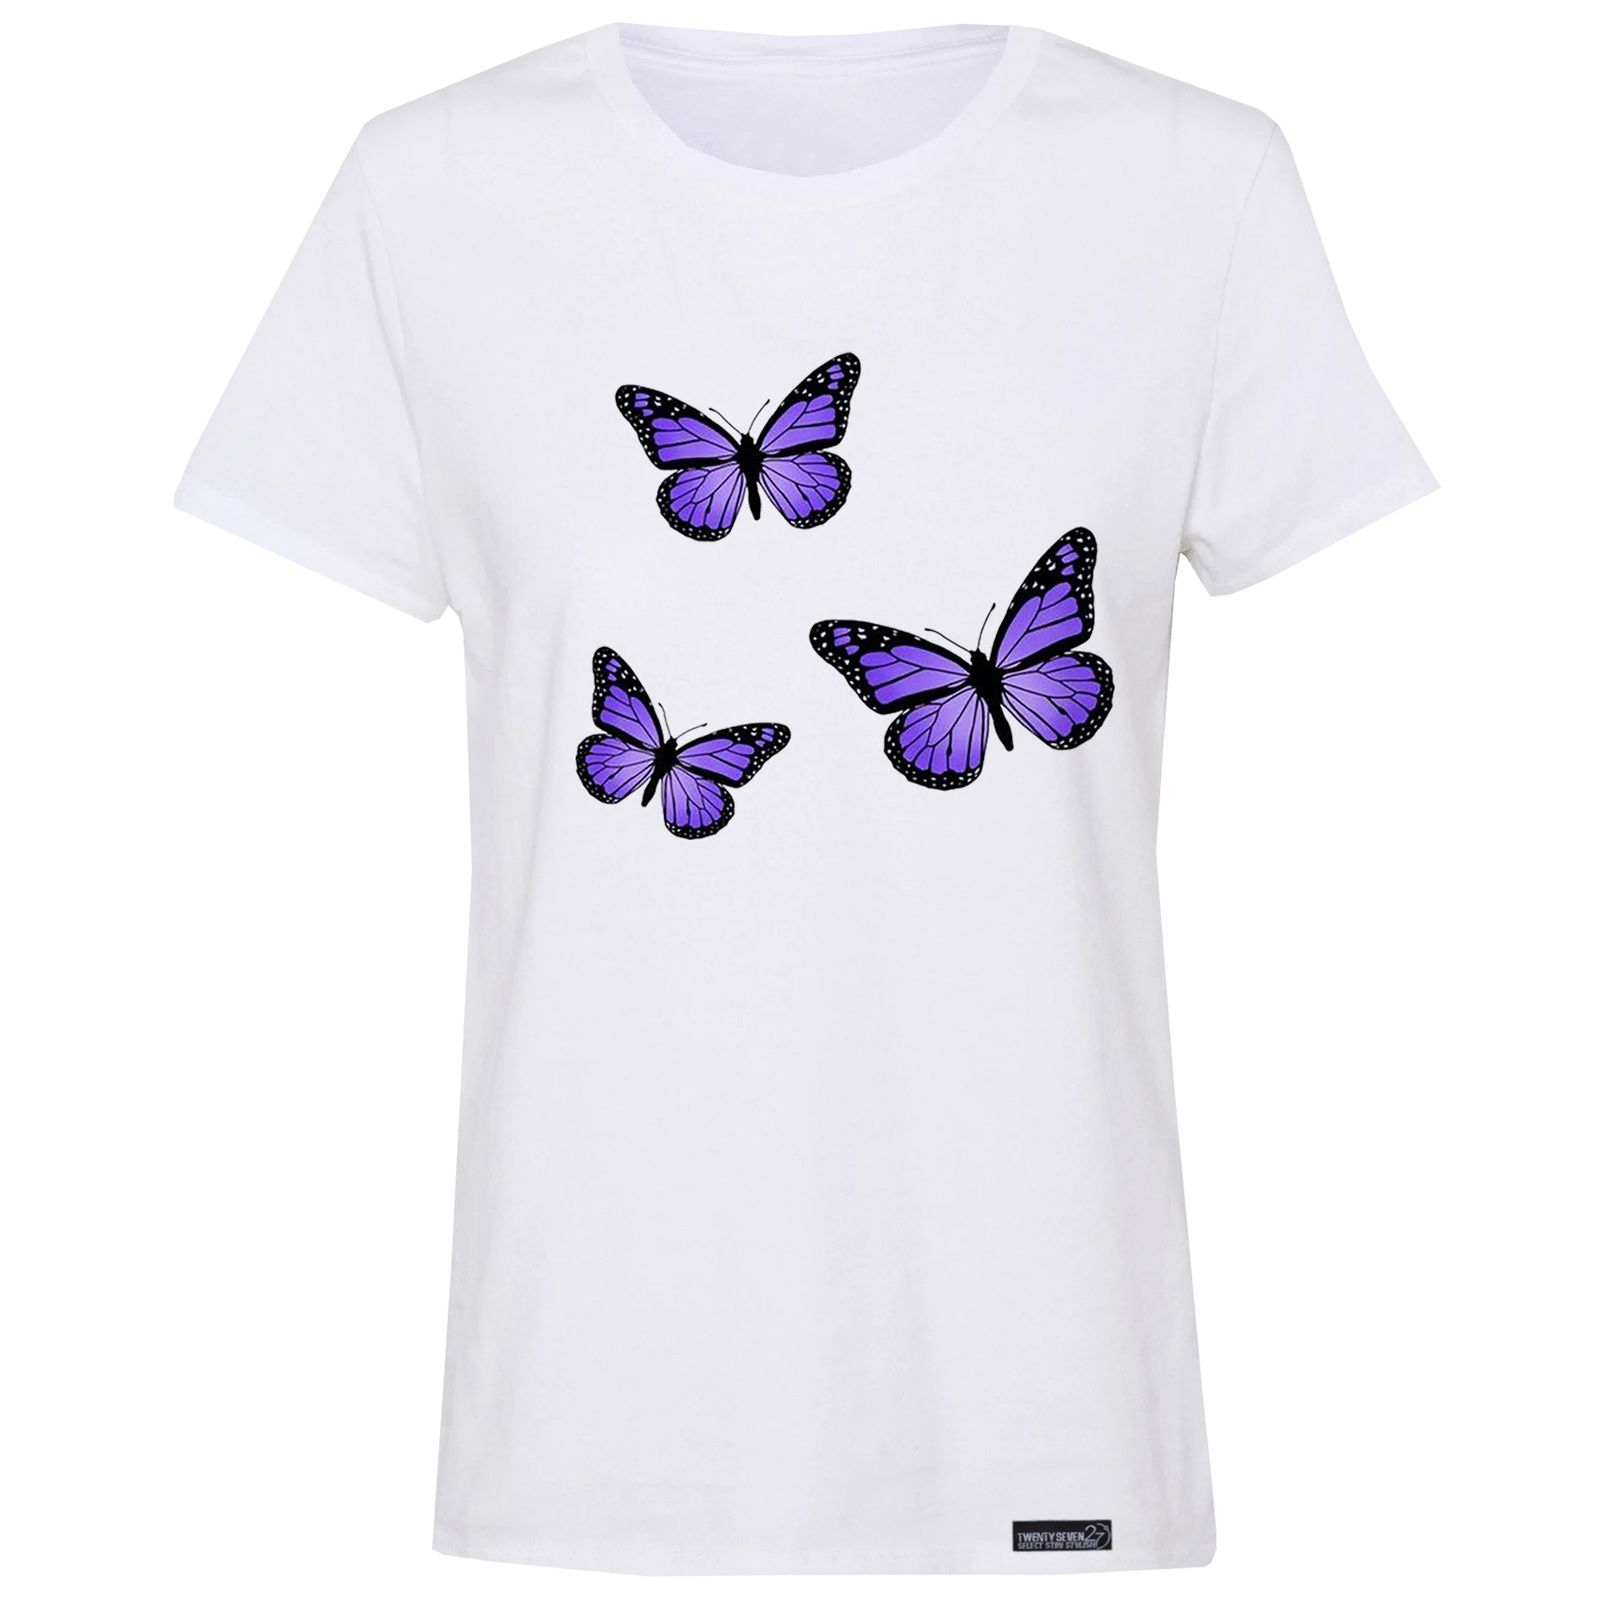 تی شرت آستین کوتاه زنانه 27 مدل پروانه کد RN617 -  - 1